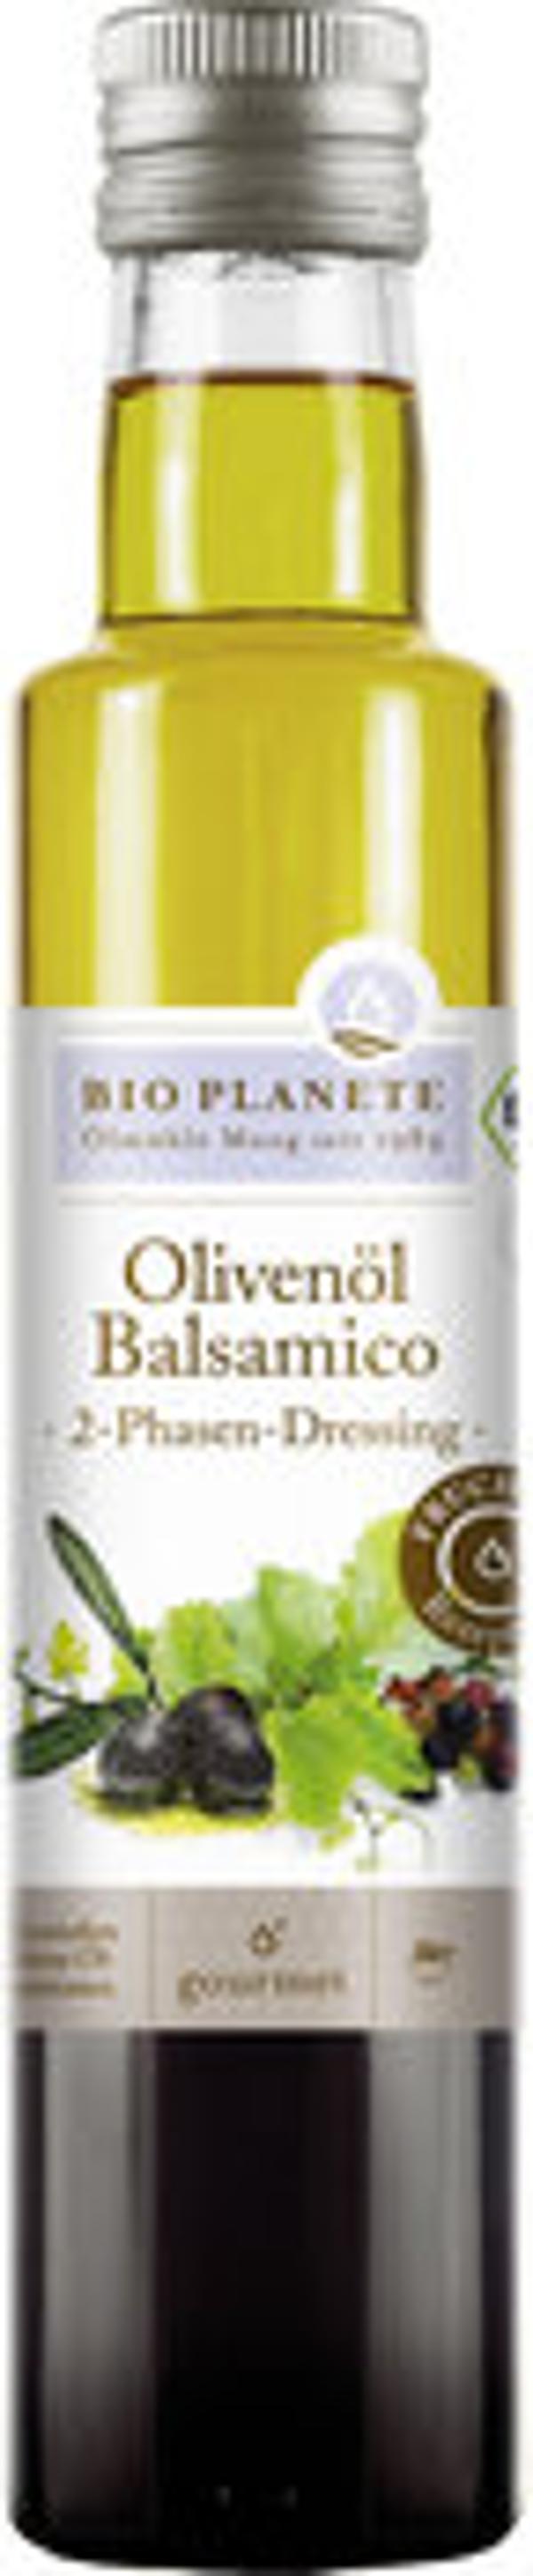 Produktfoto zu Bio Planète Olivenöl und Balsamico-Essig 250ml